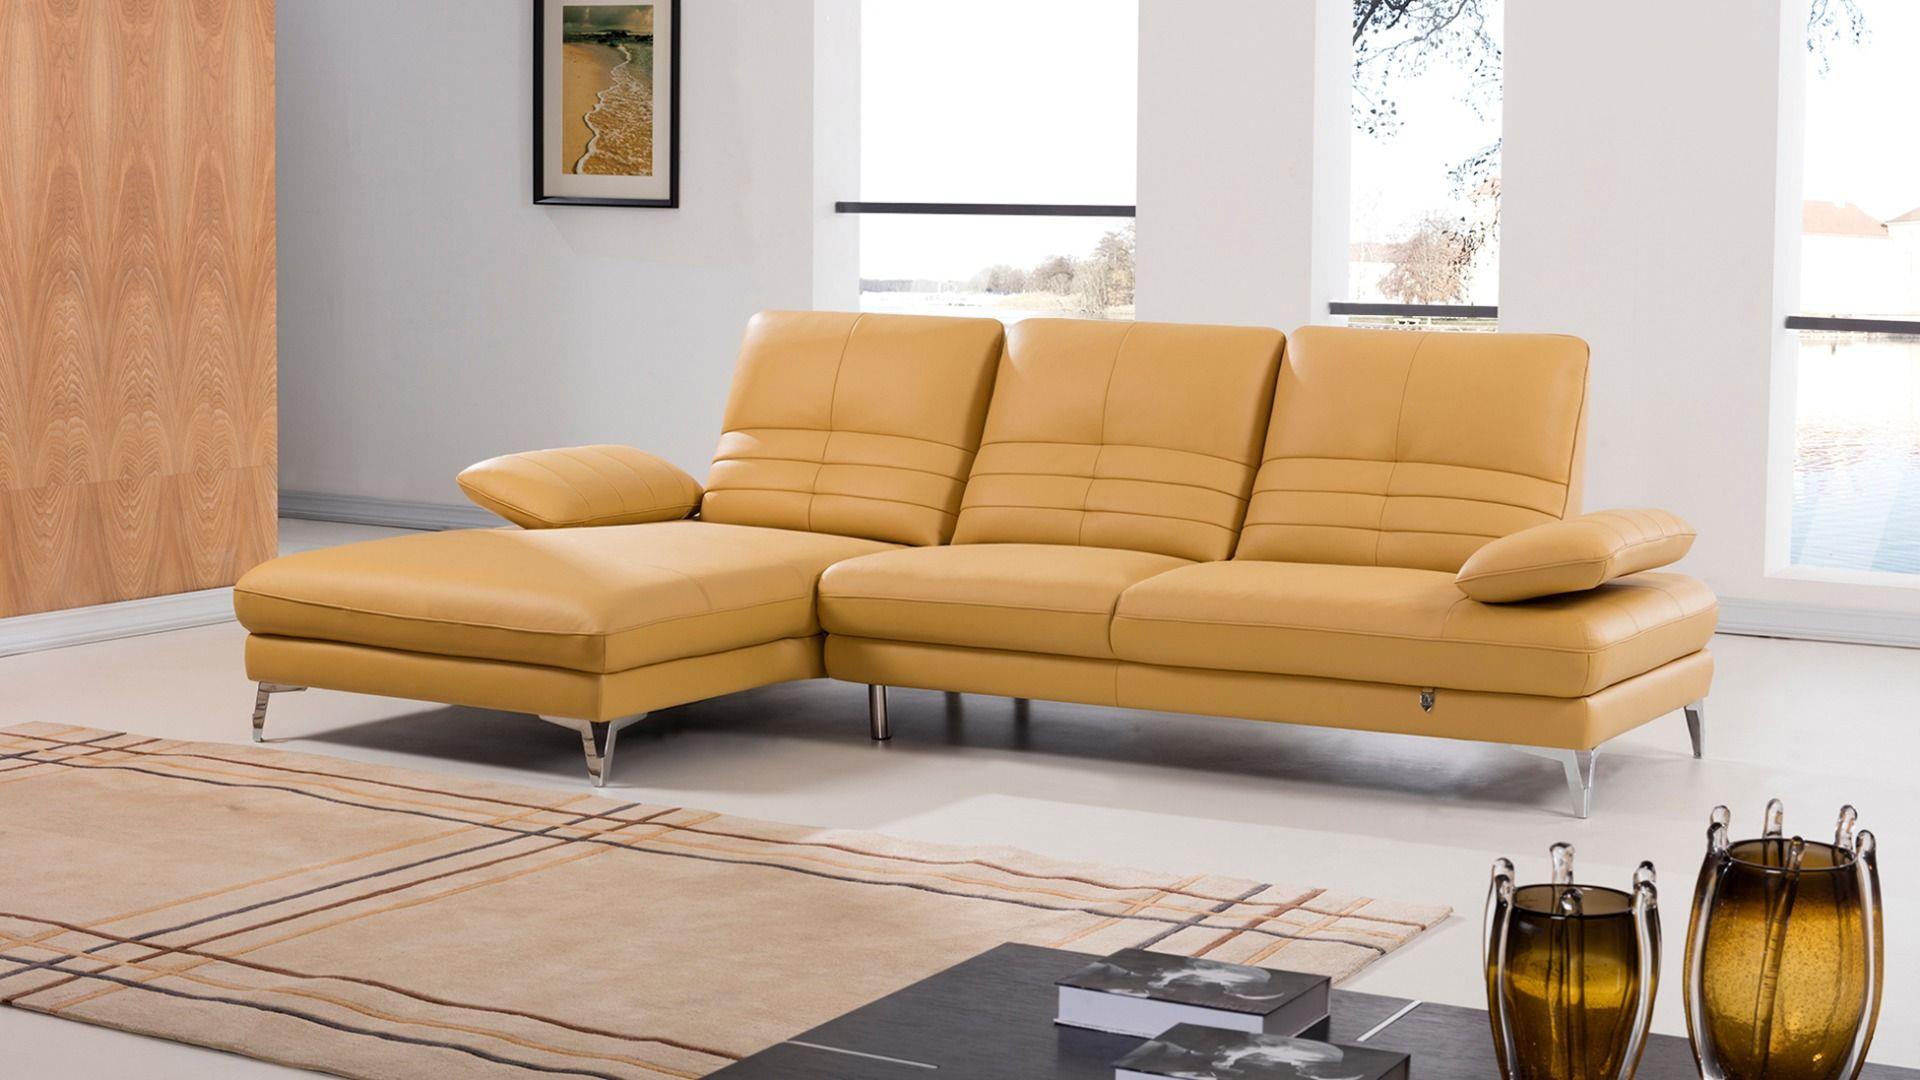 

    
American Eagle Furniture EK-L070-YO Sectional Sofa Yellow EK-L070L-YO
